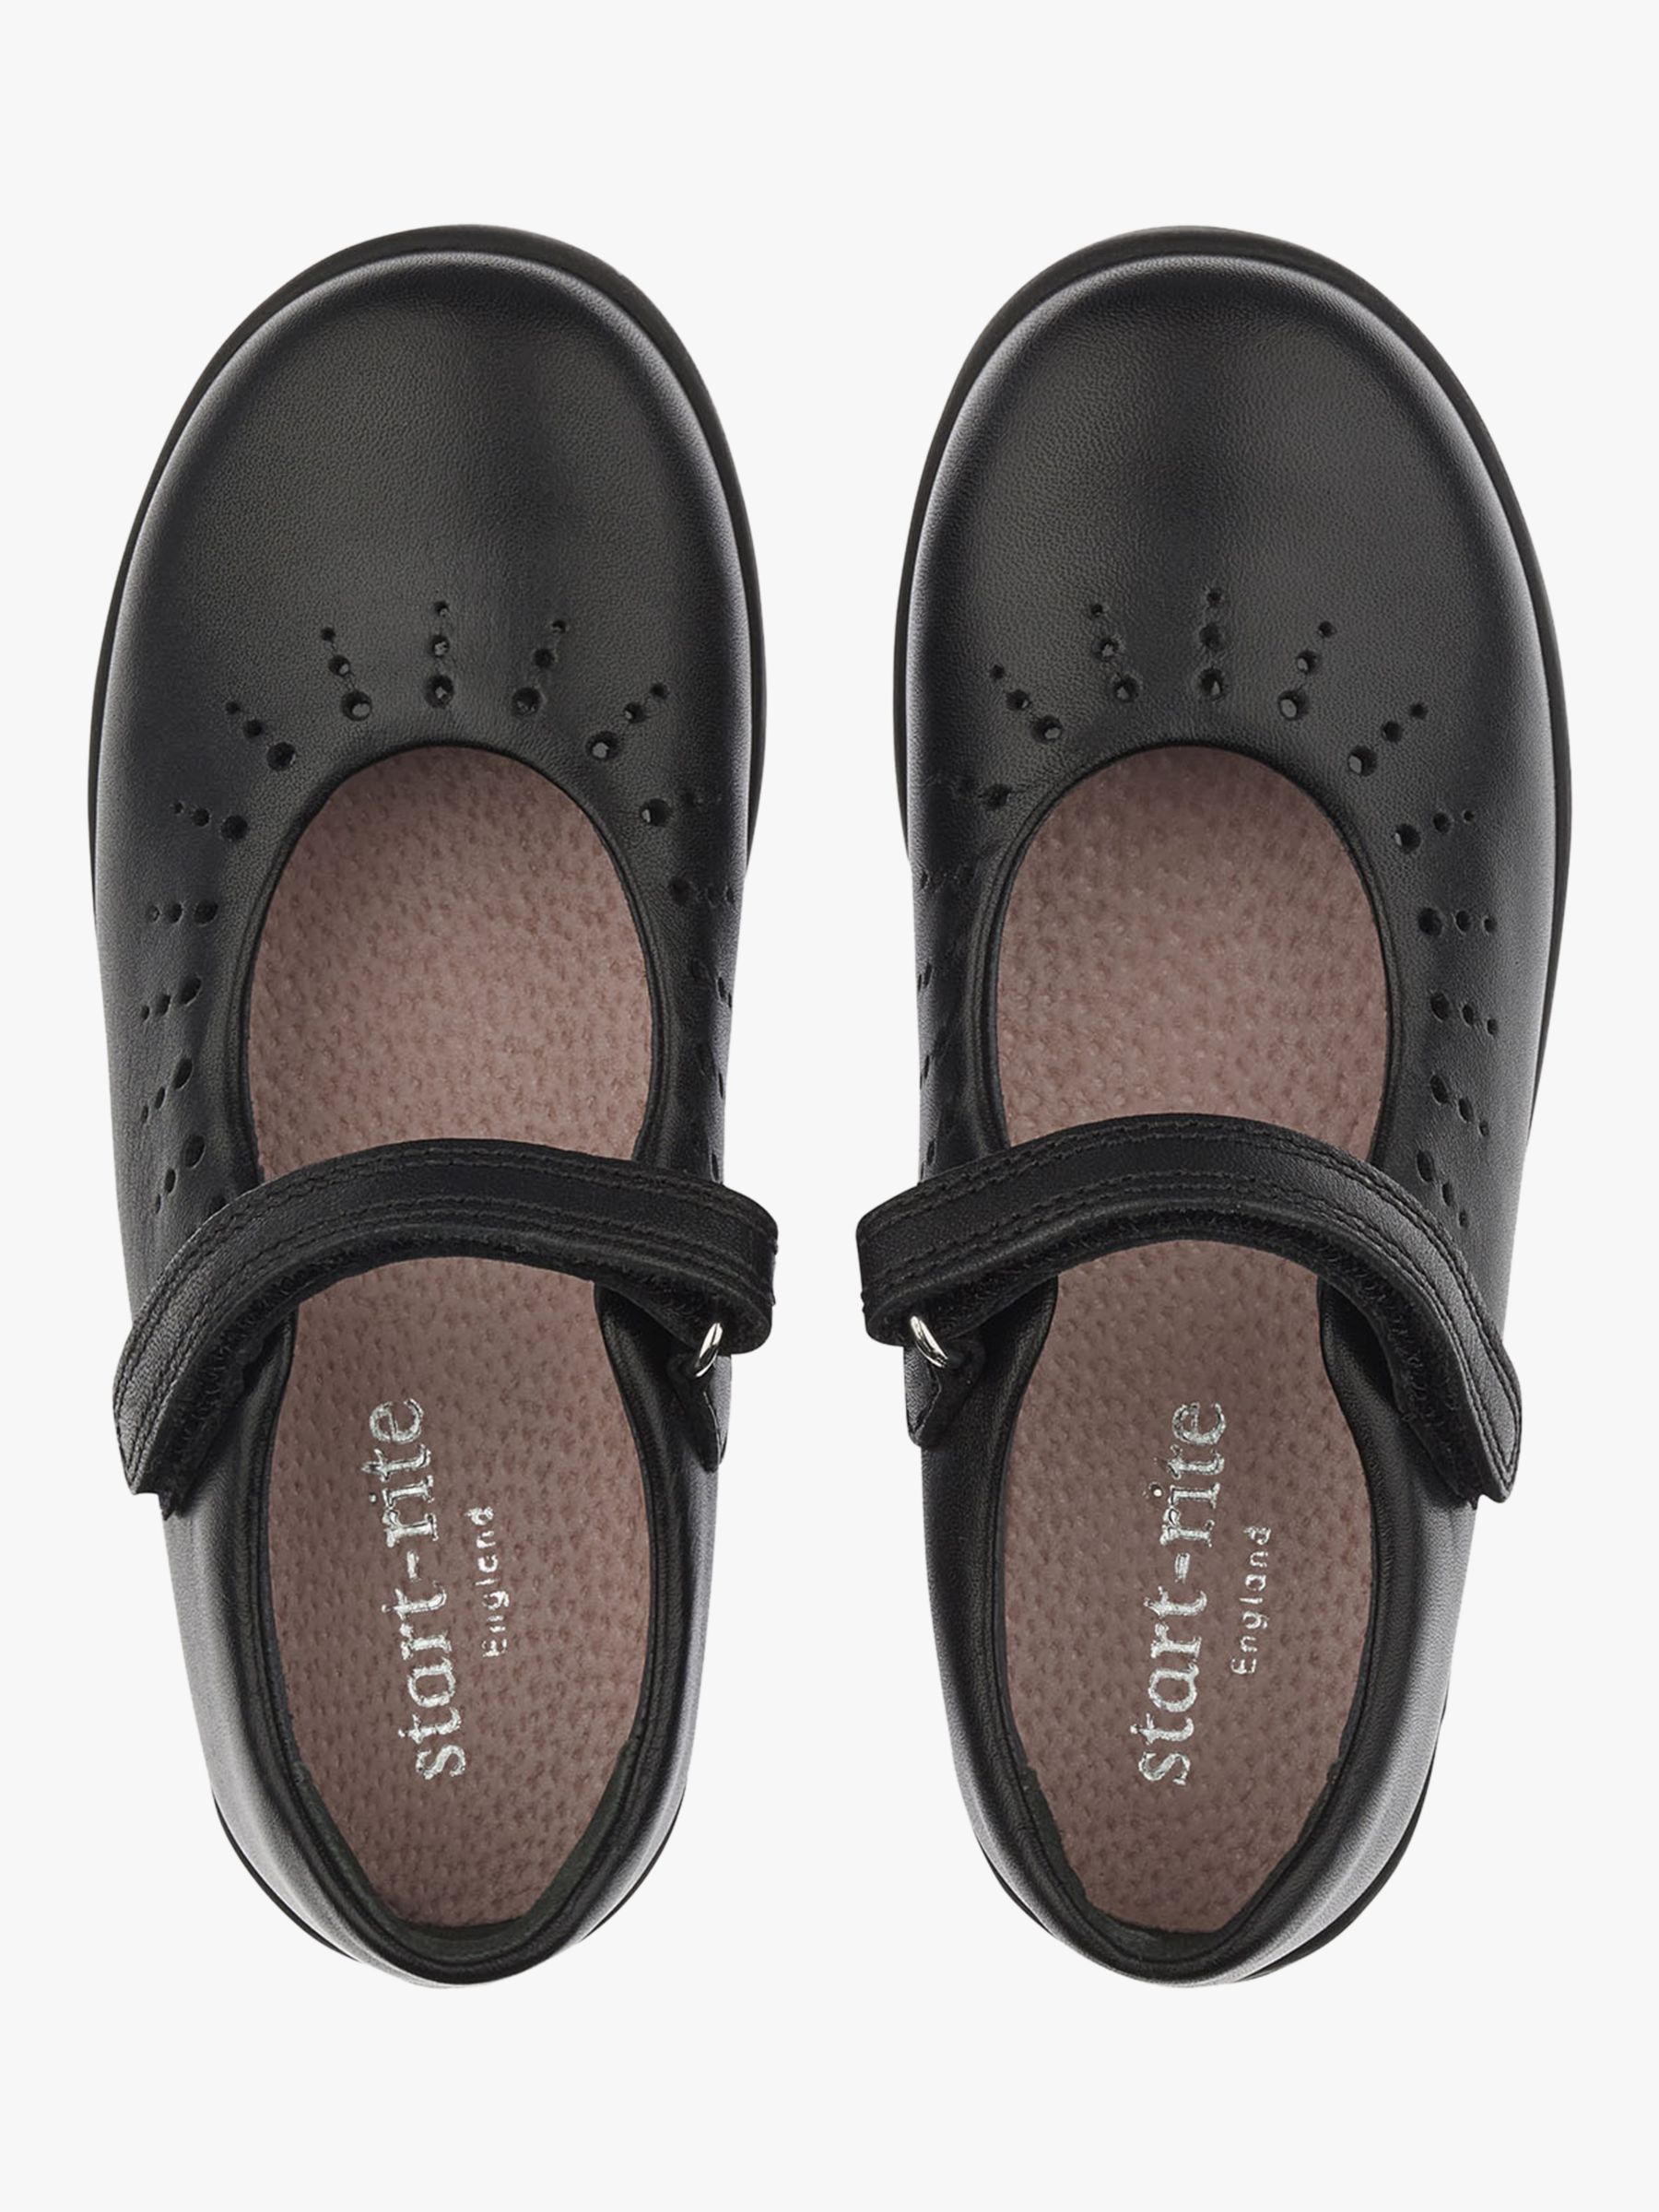 Start-Rite Kids' Mary Jane Leather Shoes, Black, Black, 10E Jnr